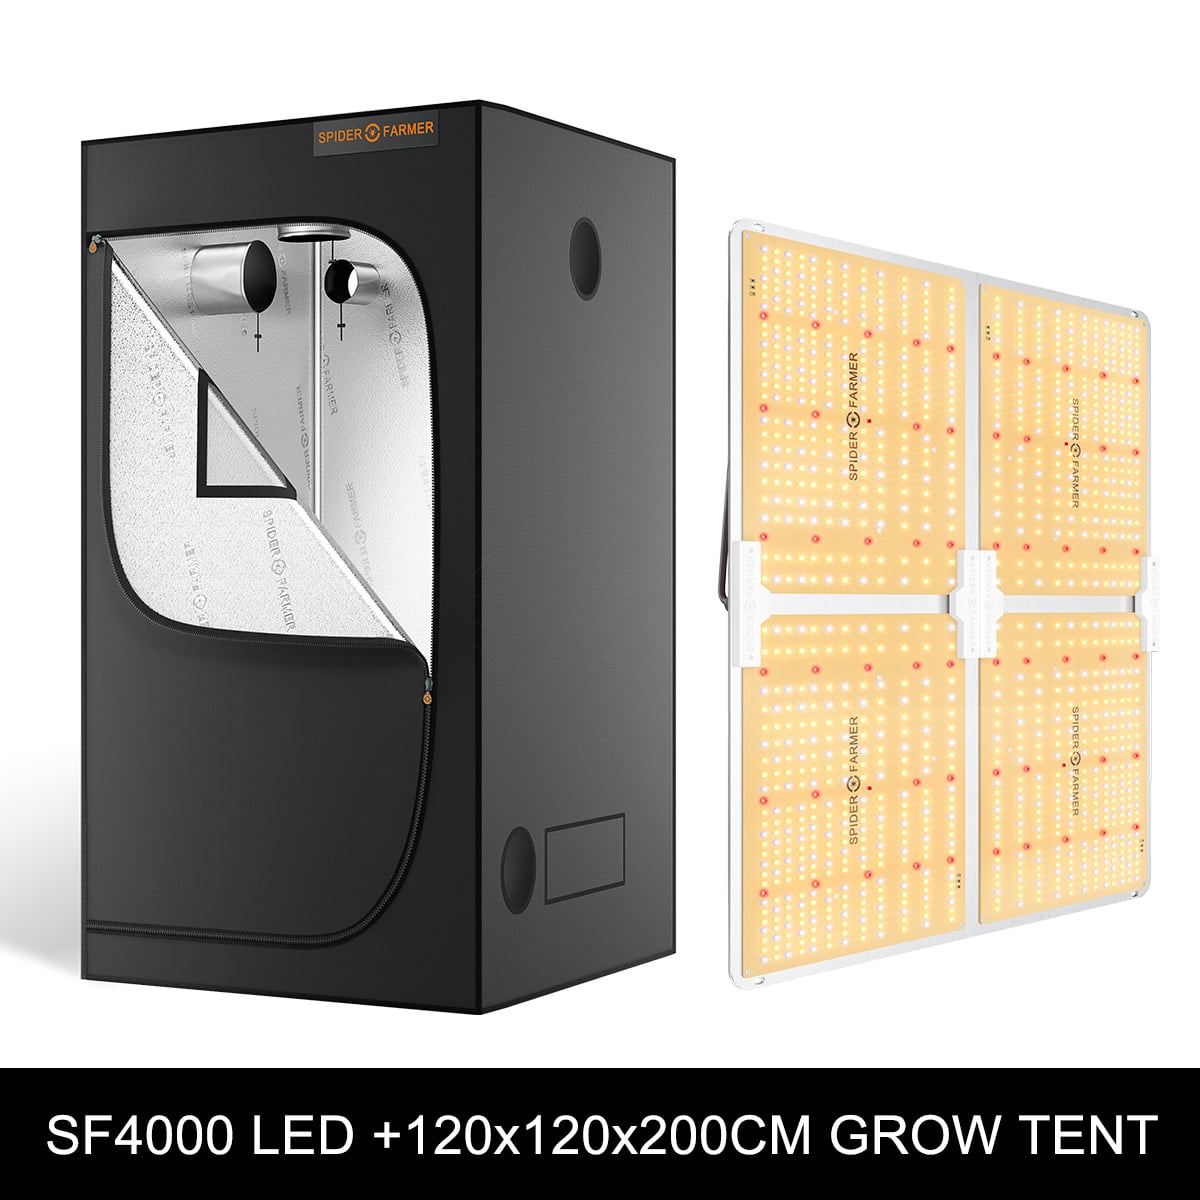 Spider Farmer SF4000 LED +120x120x200cm grow tent